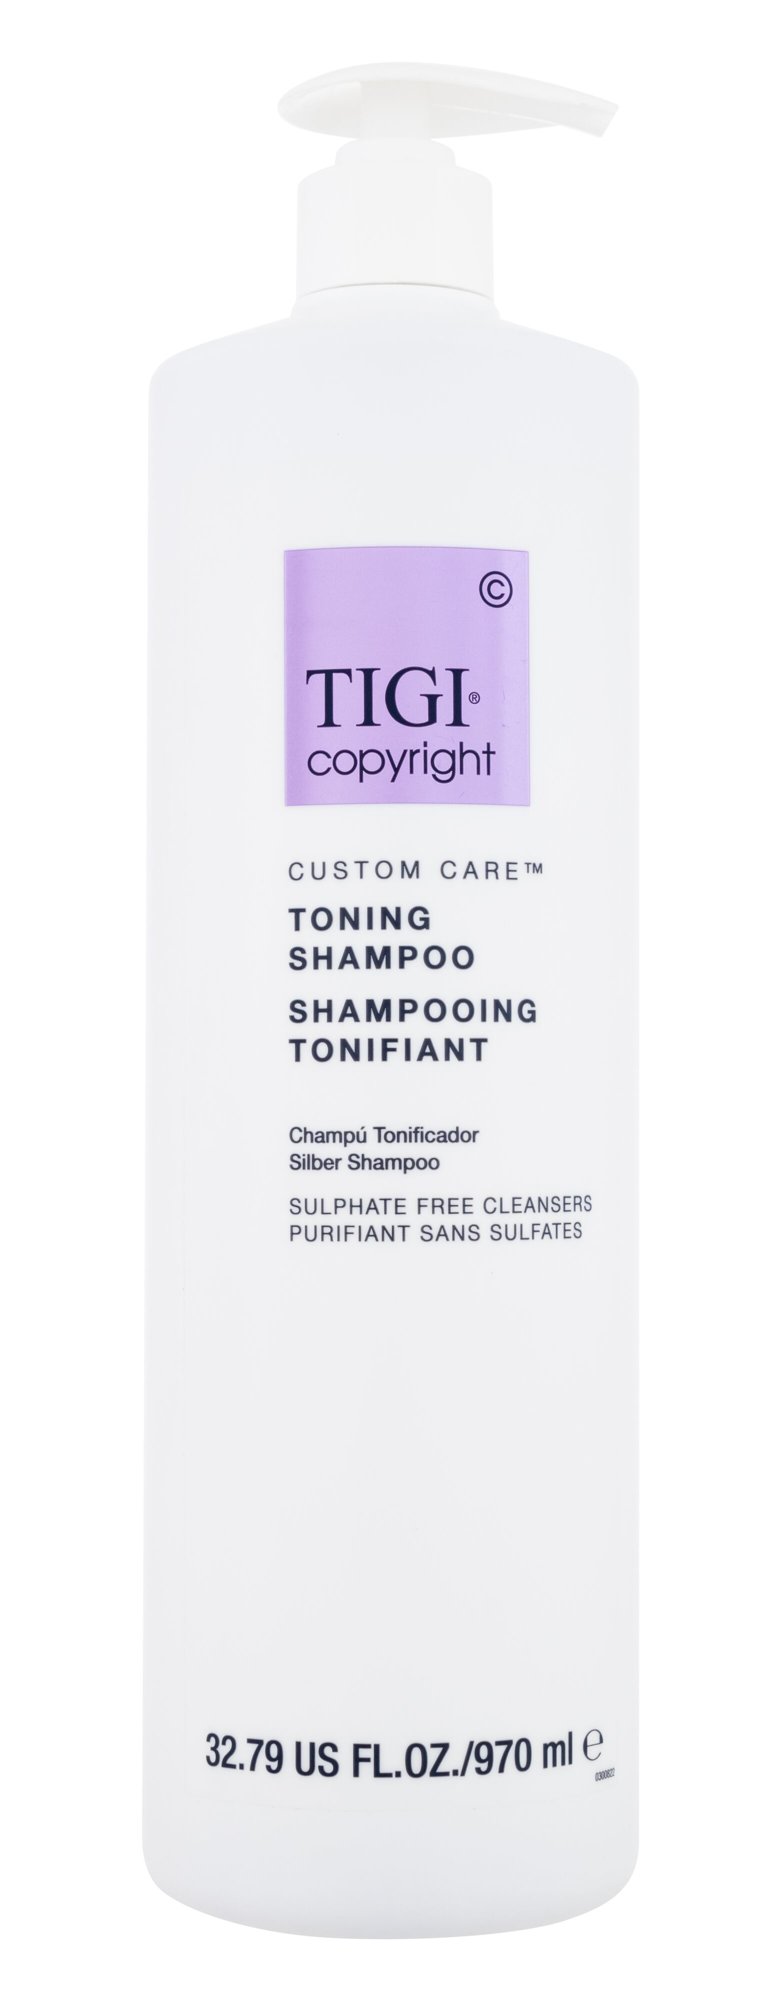 Tigi Copyright Custom Care Toning Shampoo 970ml šampūnas